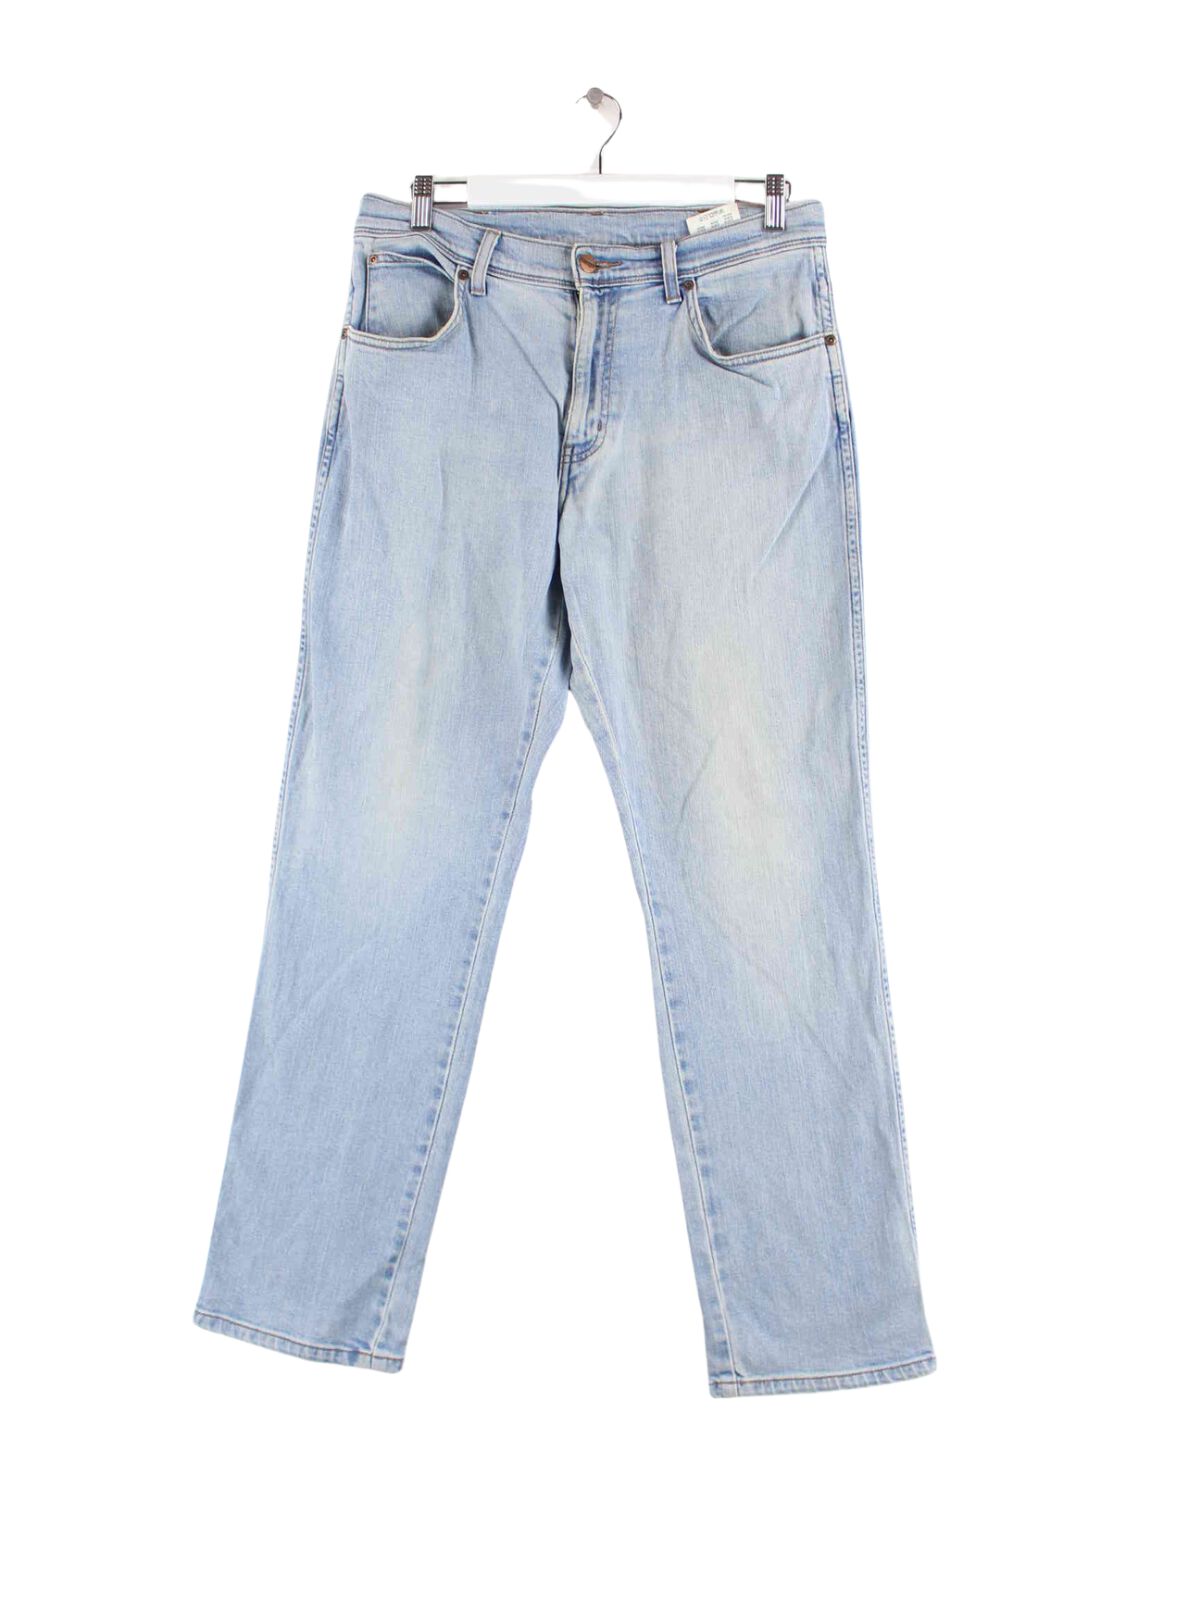 Wrangler Regular Fit Jeans Blau W32 L30 (front image)